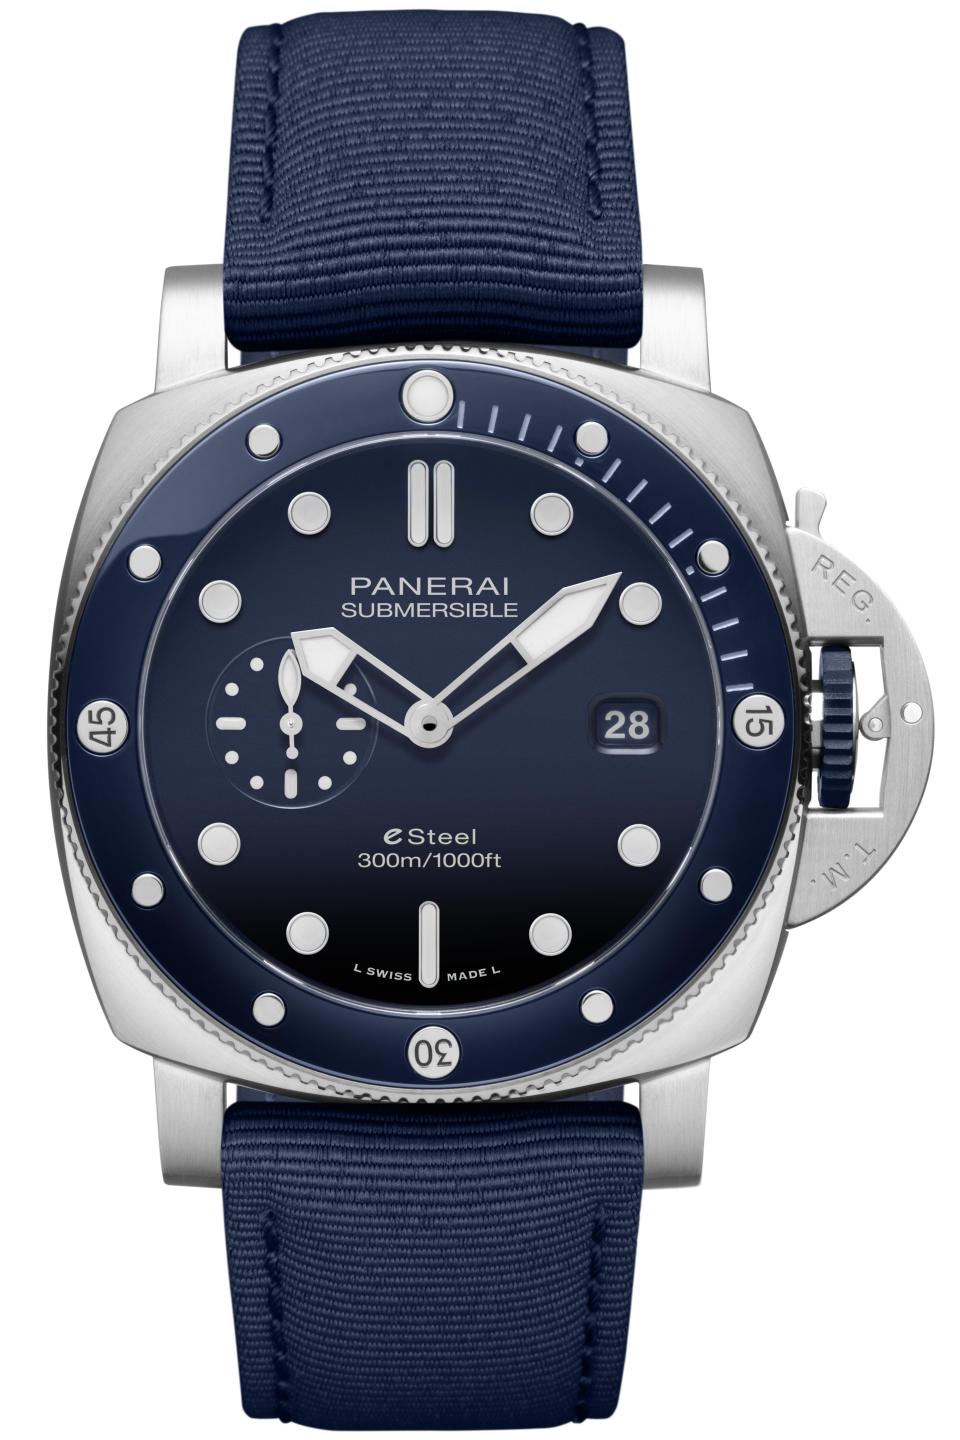 Panerai’s Submersible QuarantaQuattro eSteel watch. - Credit: Courtesy Image